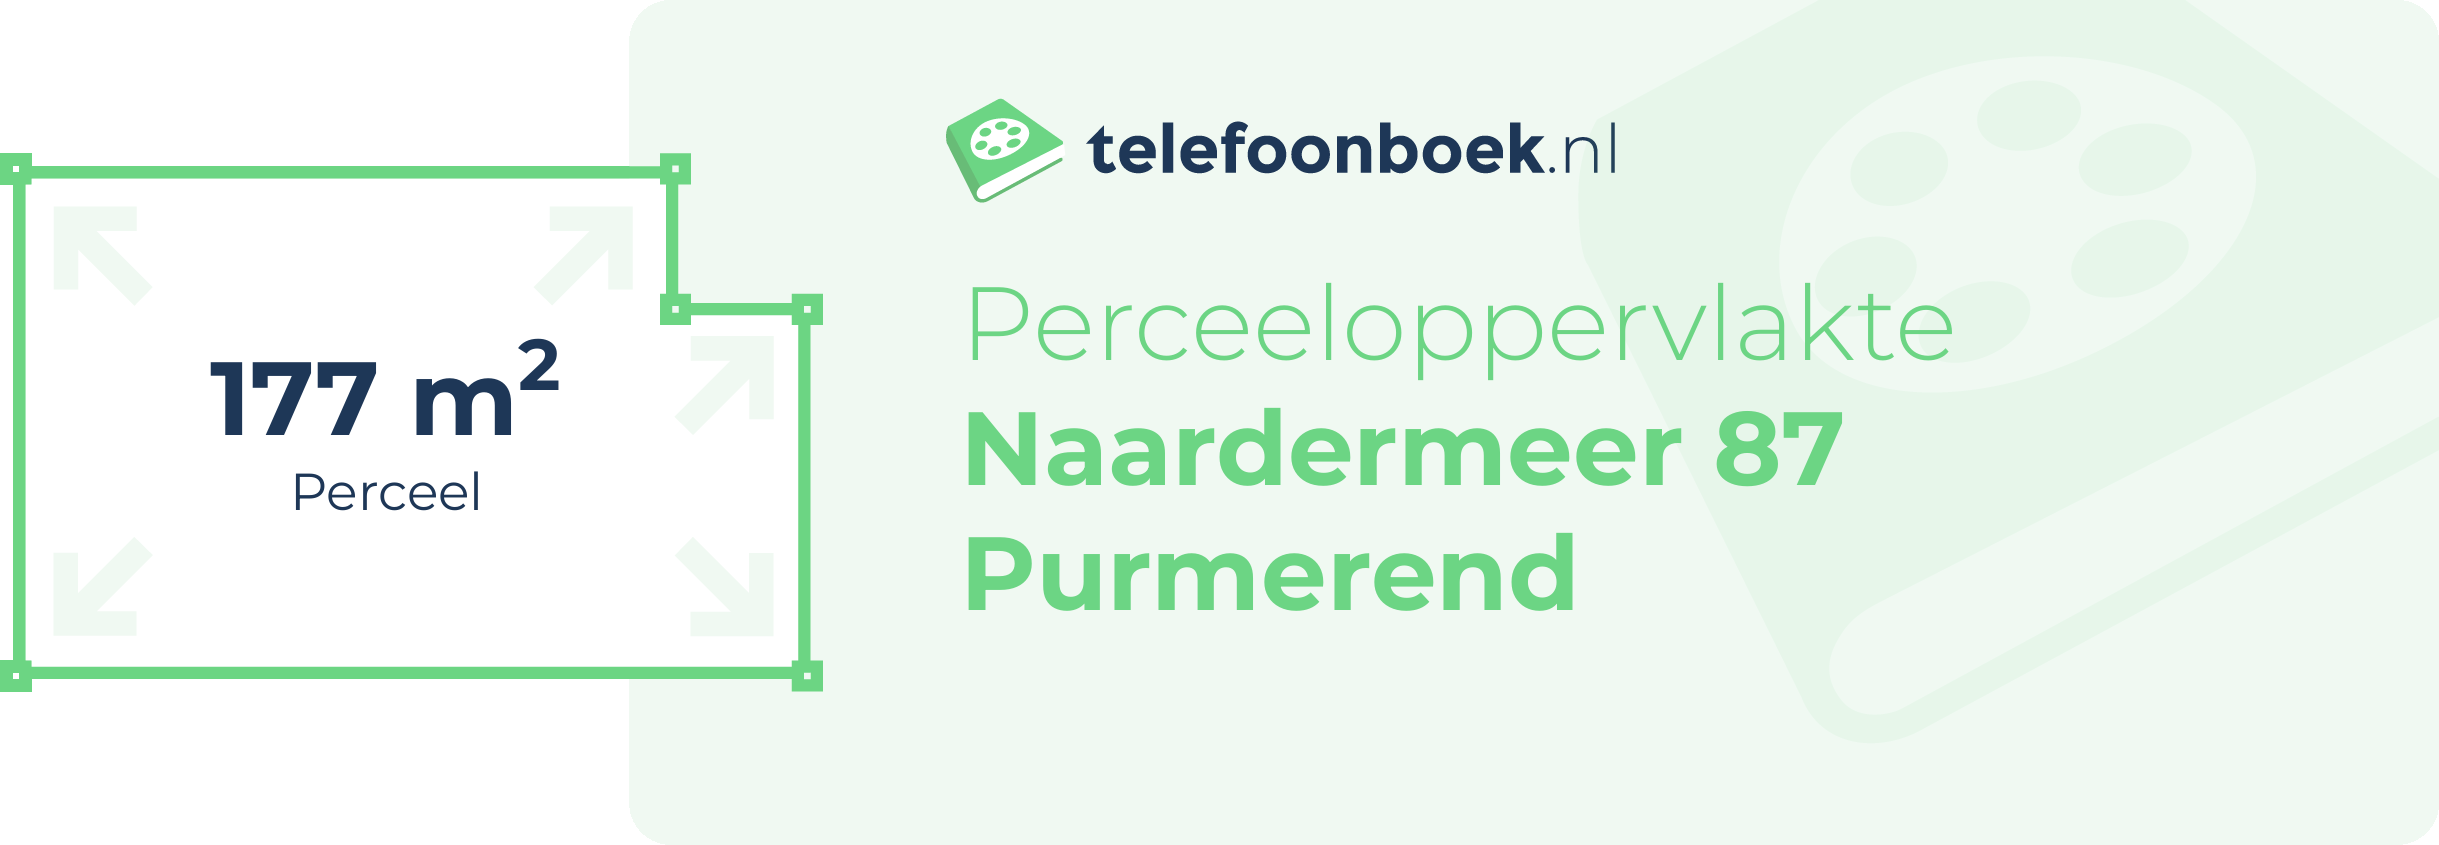 Perceeloppervlakte Naardermeer 87 Purmerend